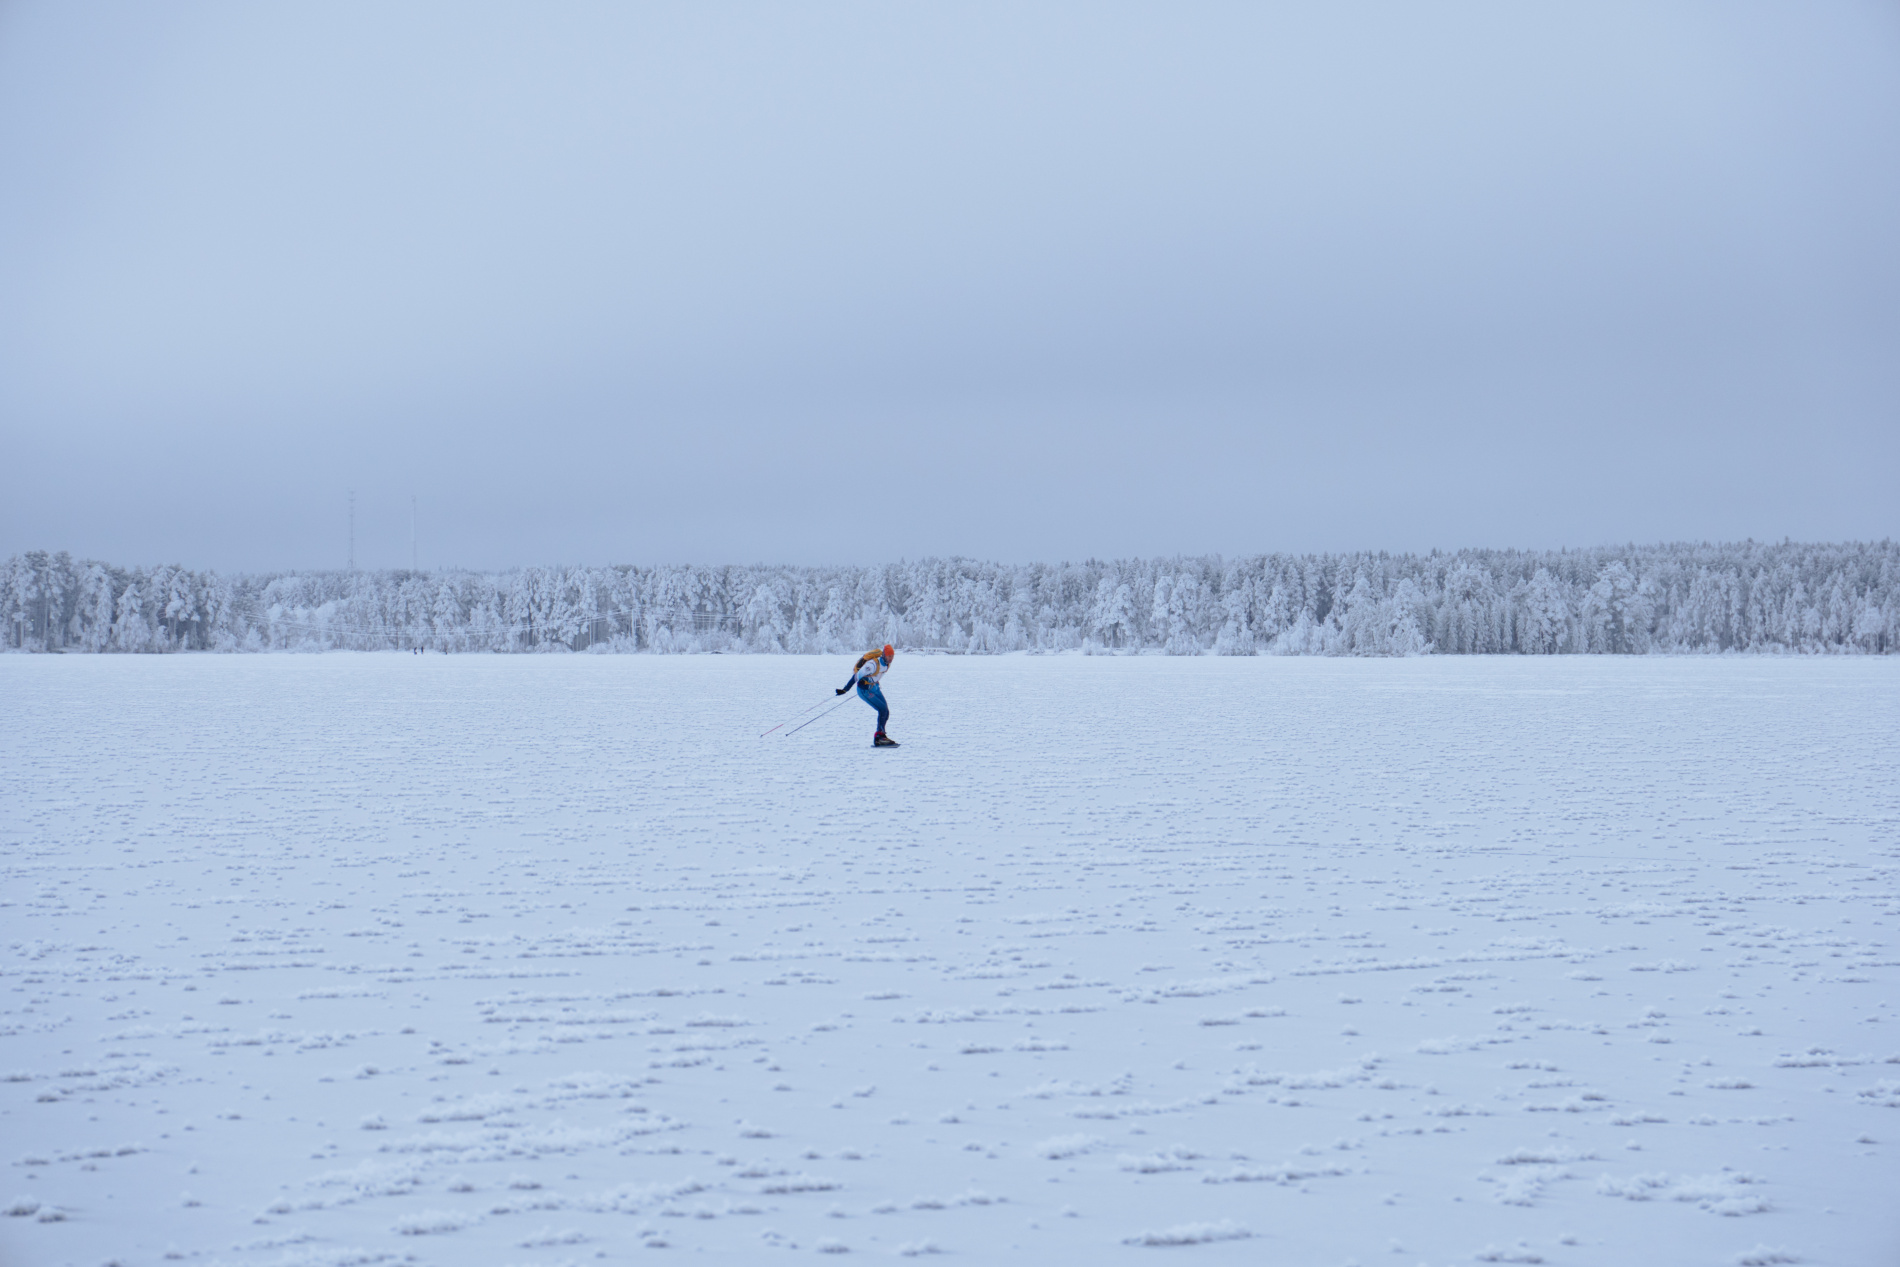 Фото: Наматывать километры по озеру - отличная подготовка к лыжным стартам. Для фанатов тренировок можно даже заняться интервалами на ПАНО по идеально ровной поверхности.